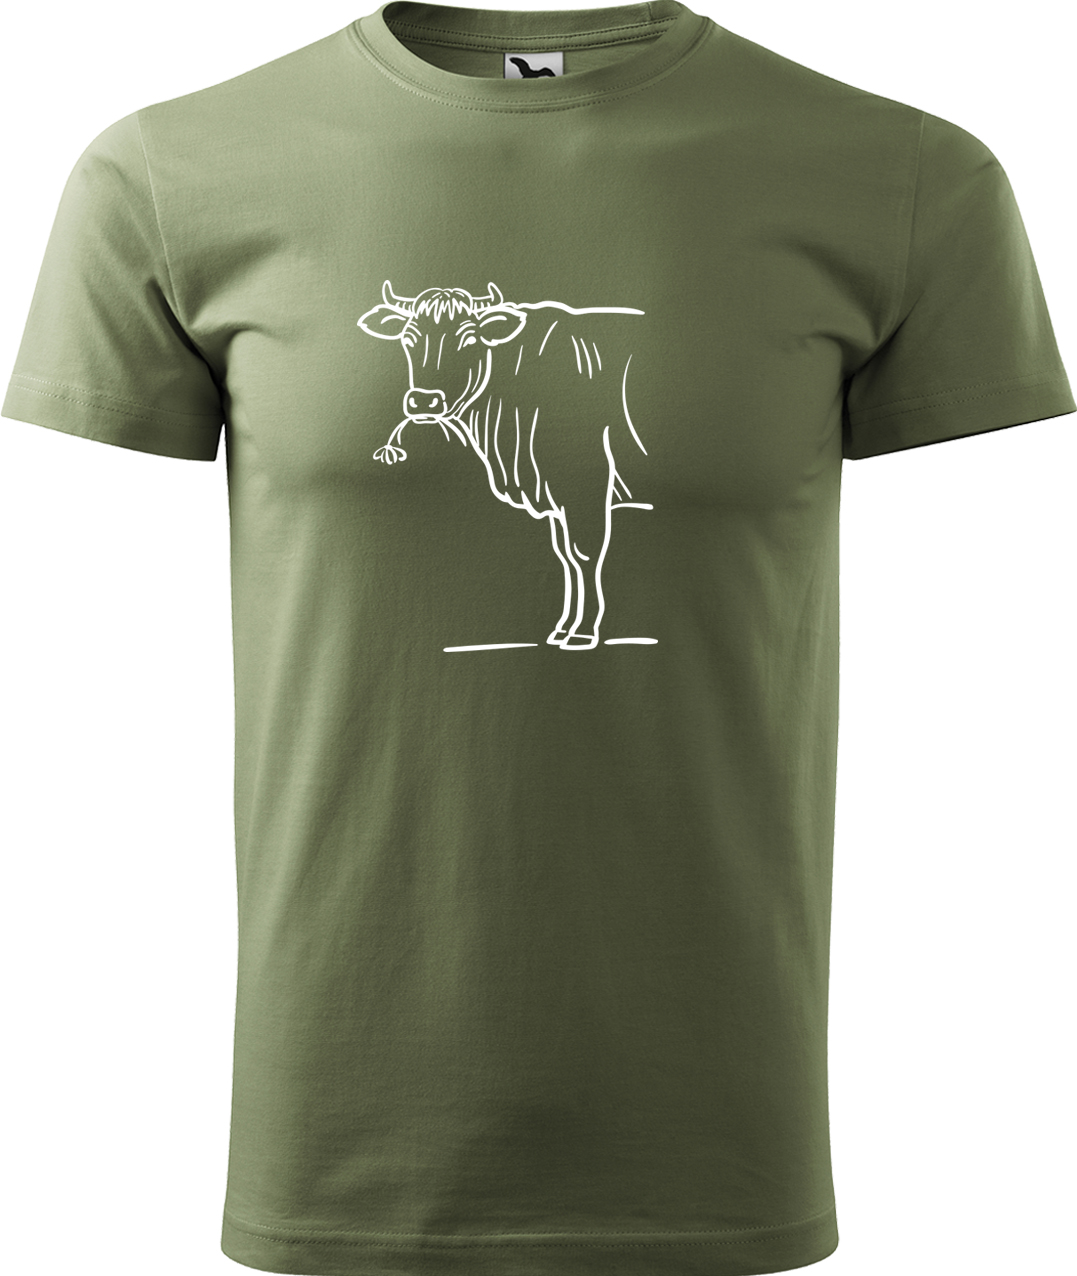 Pánské tričko s krávou - Býk Velikost: L, Barva: Světlá khaki (28), Střih: pánský